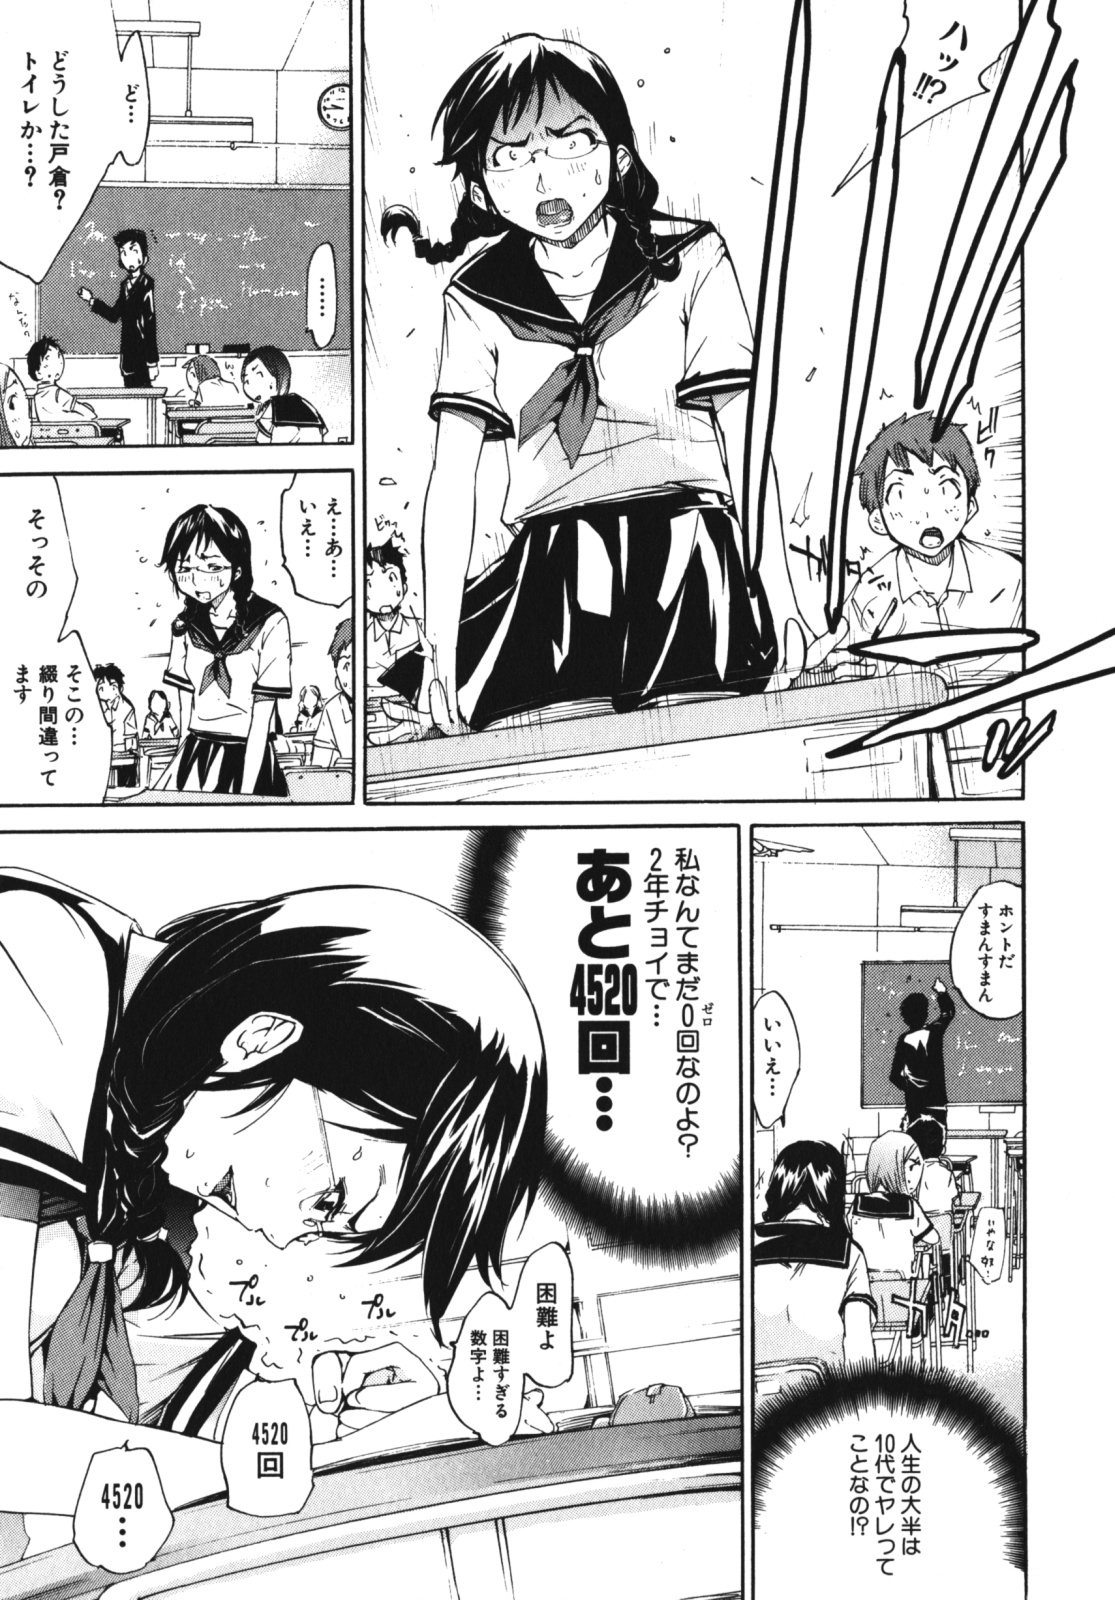 [Anthology] Geki Yaba Vol.4 - Namade Shitene page 32 full